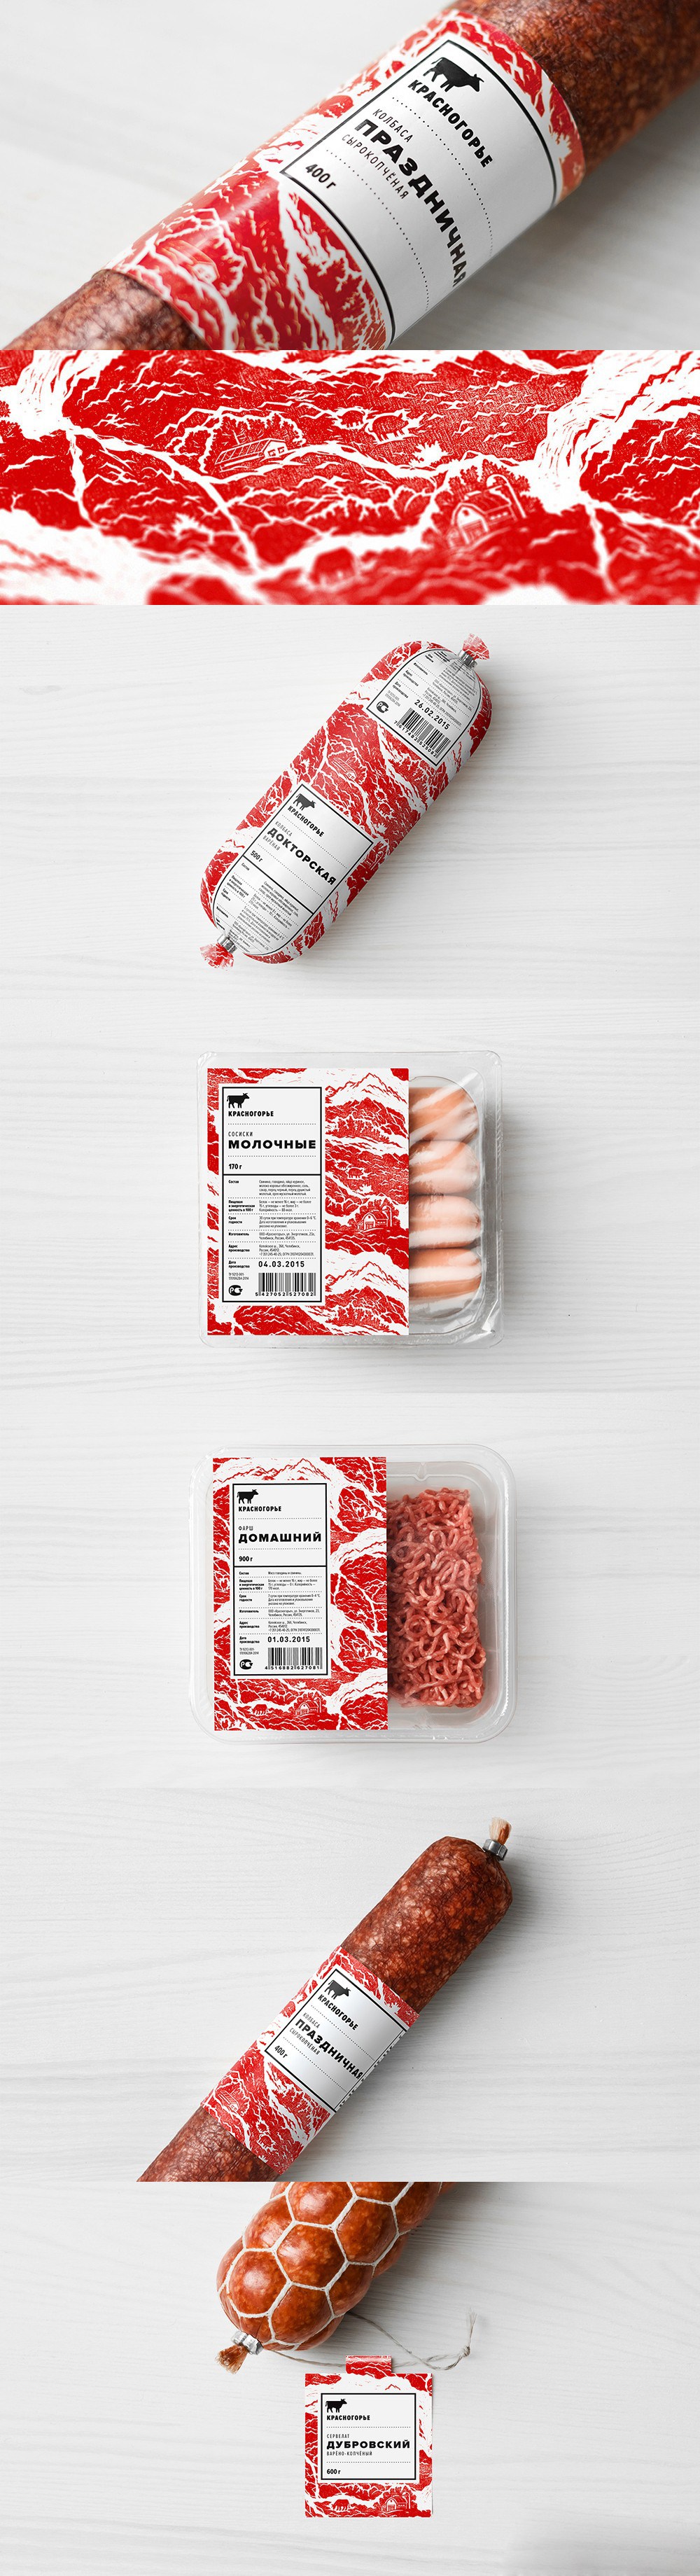 美食和香肠肉类加工包装设计